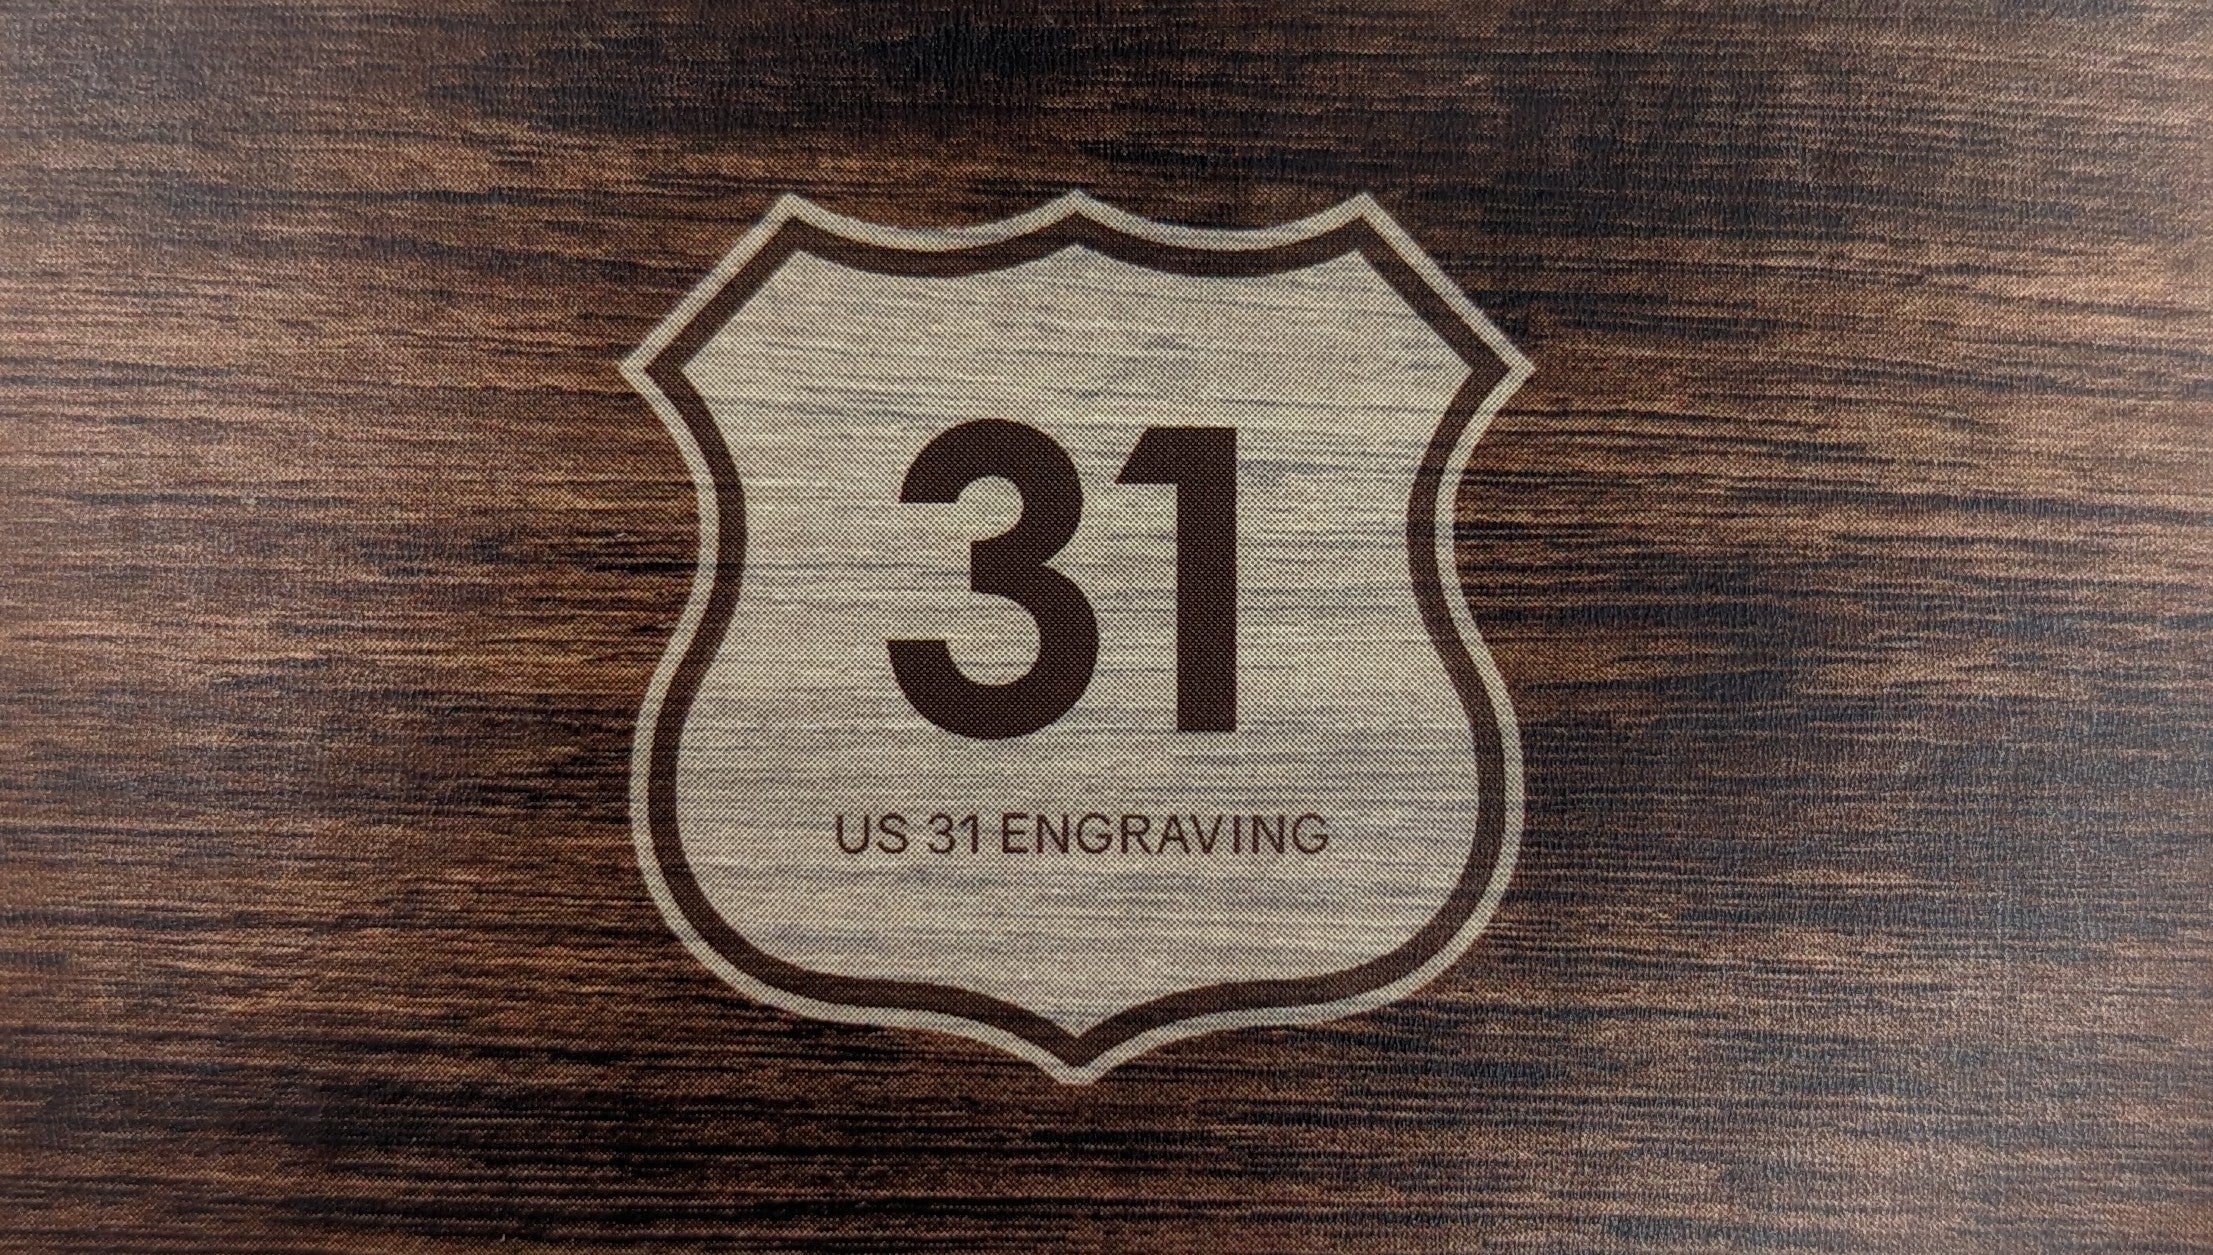 US 31 Engraving